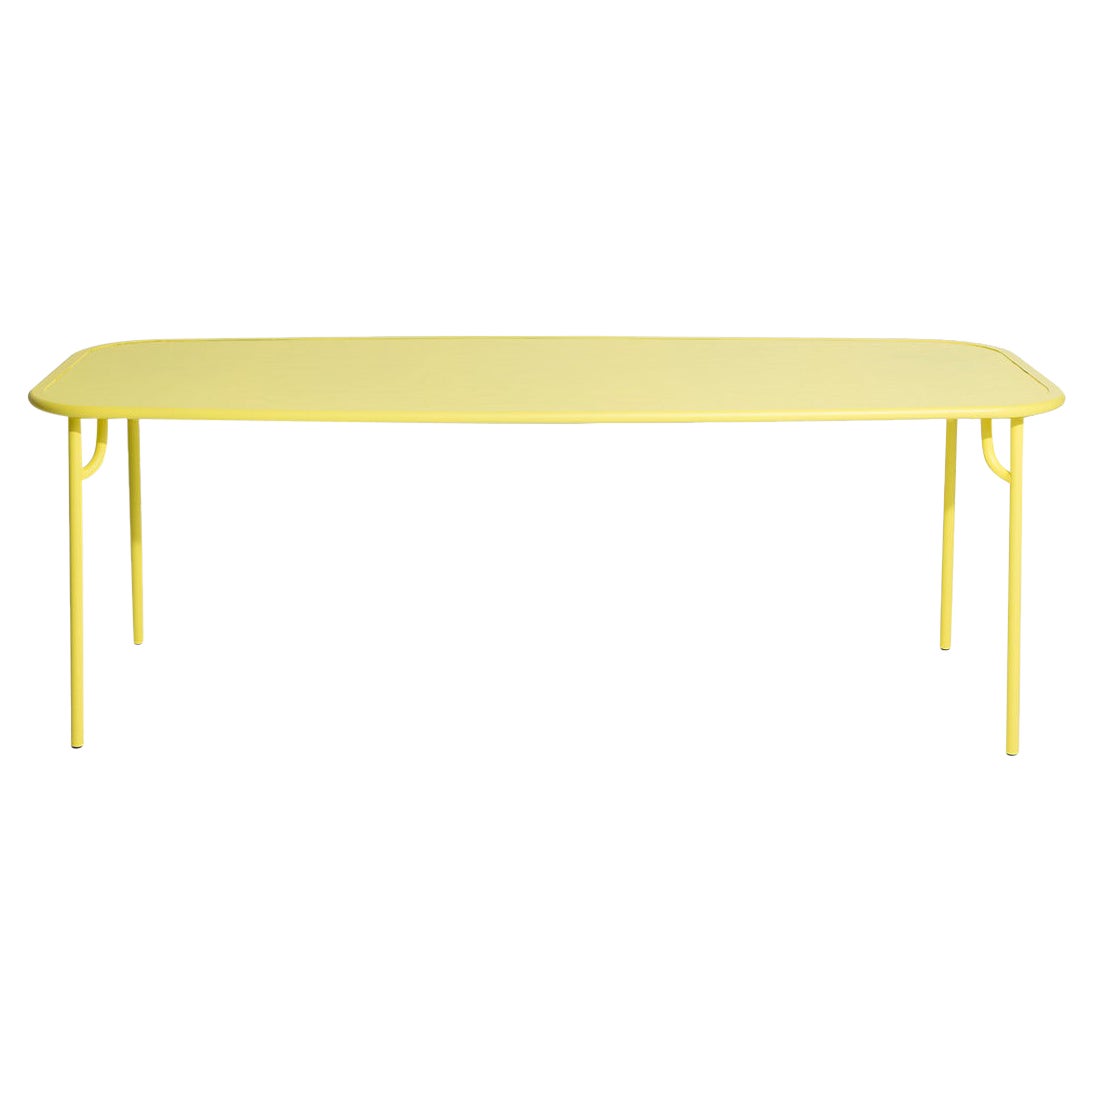 Petite table de salle à manger rectangulaire simple Week-end en aluminium jaune de Friture